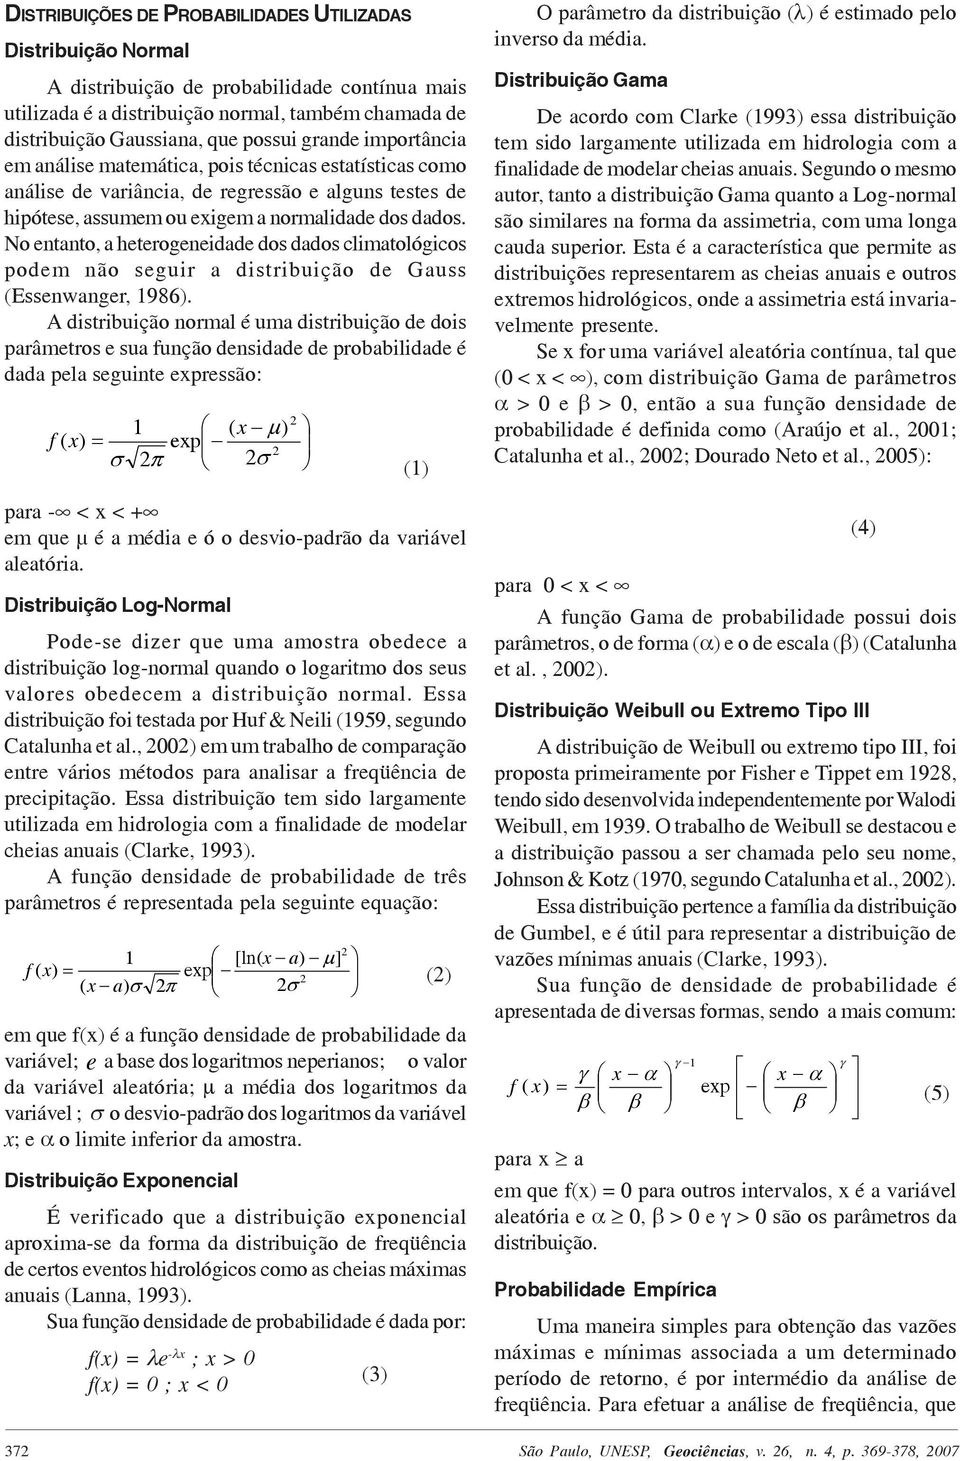 No entanto, a heterogeneidade dos dados climatológicos podem não seguir a distribuição de Gauss (Essenwanger, 1986).